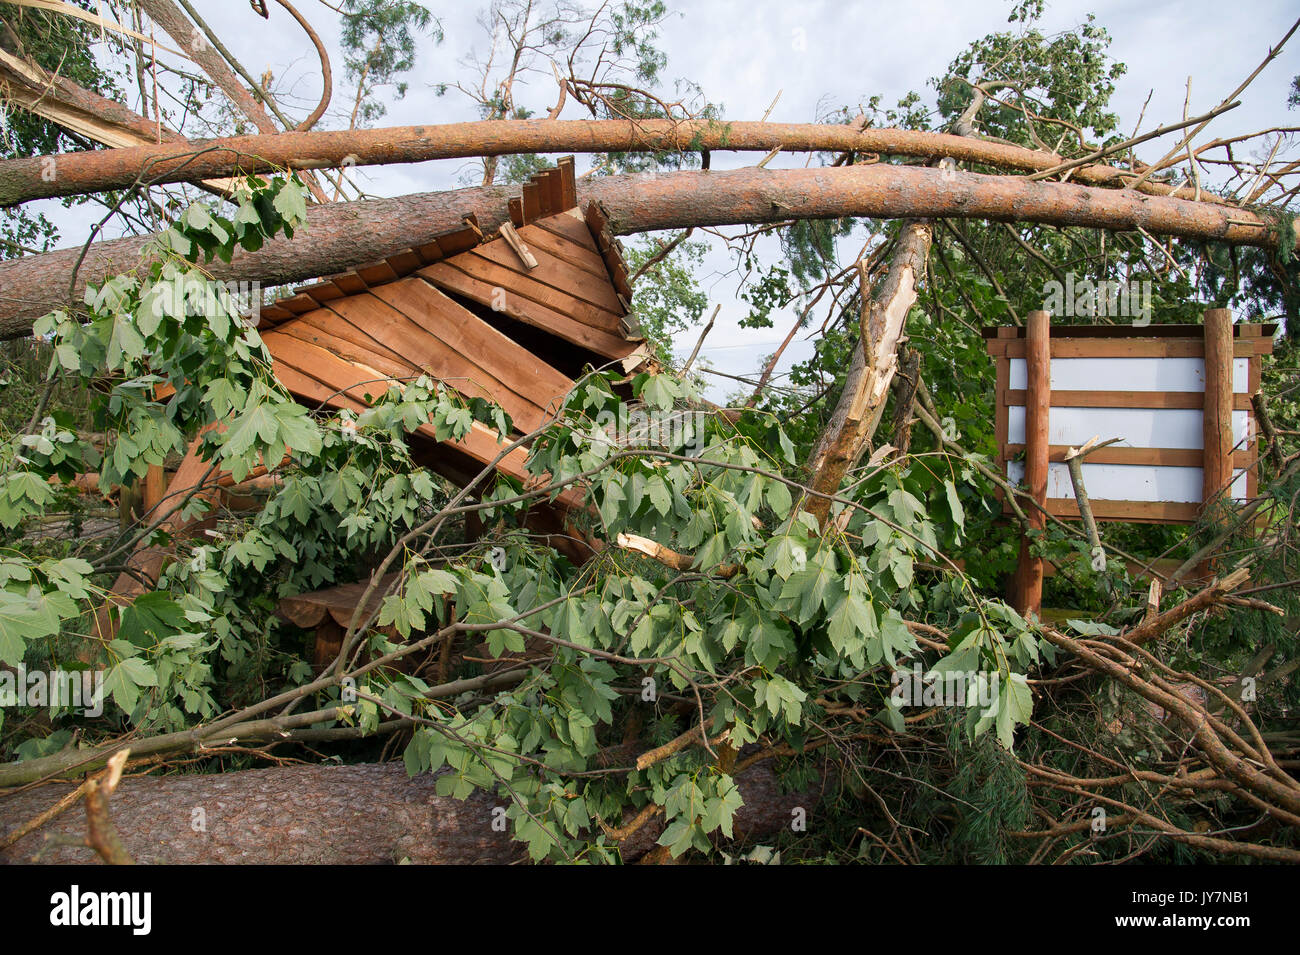 Distrutto luogo di riposo e di alberi caduti nella foresta causato da estremamente alta velocità del vento durante la tempesta a pochi giorni fa in Jeziorki, Polonia 16 Agosto 2017 Foto Stock